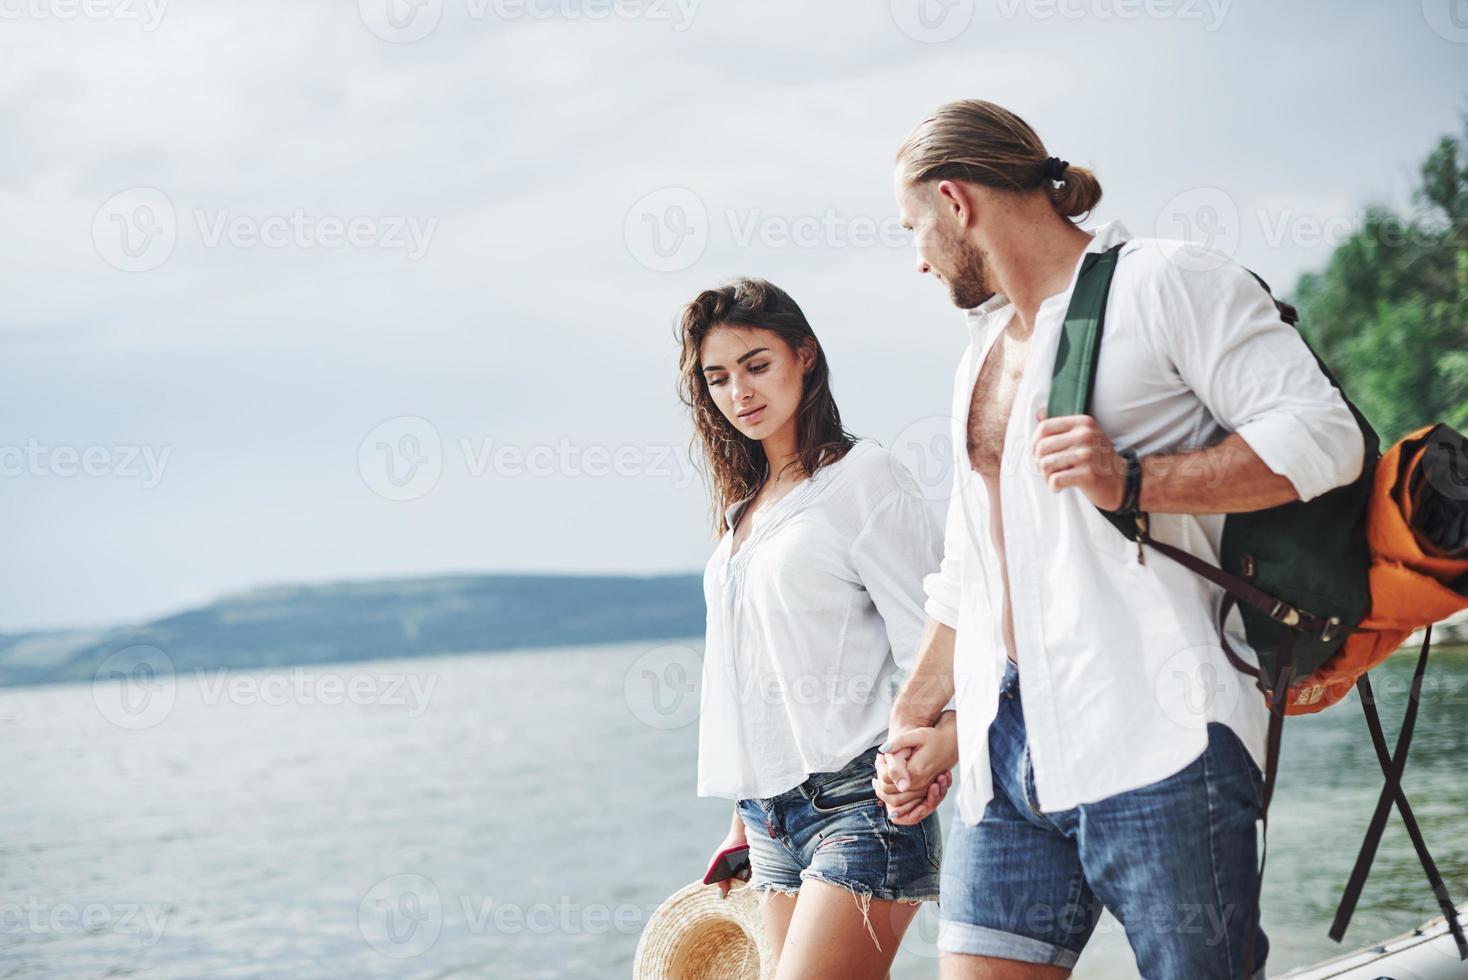 glad promenad av vackra par på utomhus vid sjön bakgrund foto